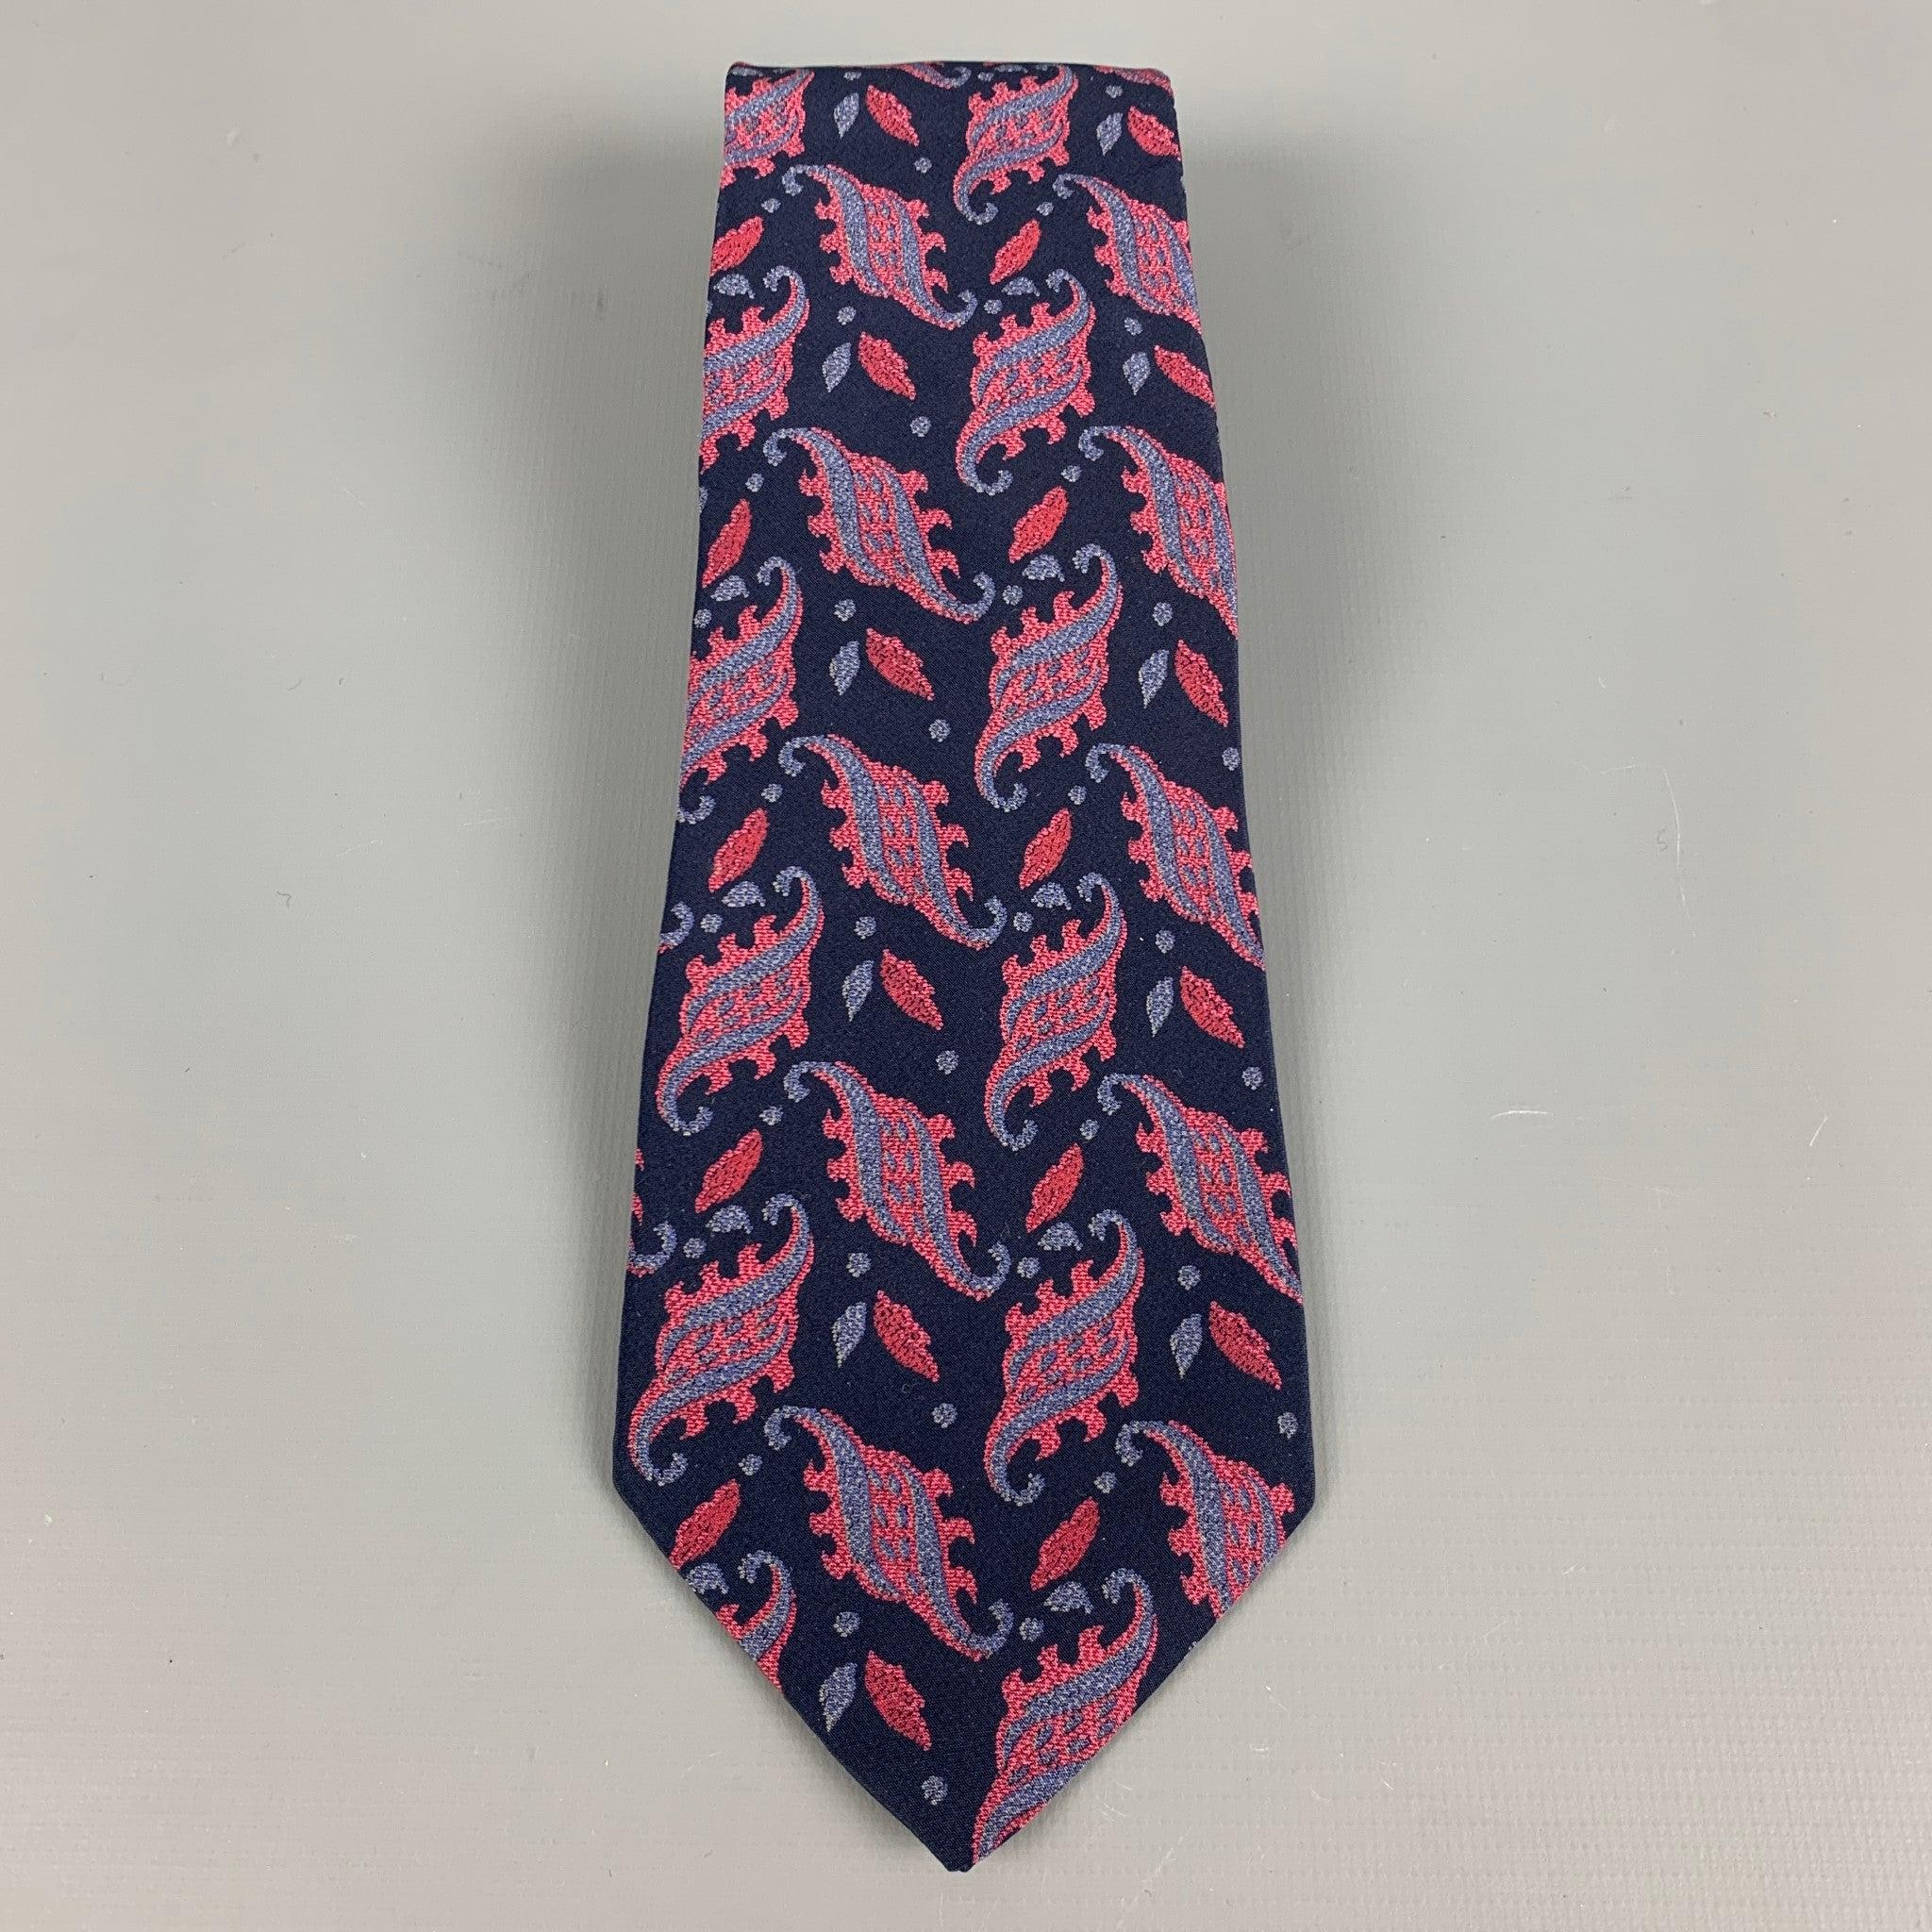 VALENTINO
Krawatte aus marineblauem Seidenstoff mit mehrfarbigem Paisleymuster. Made in Italy Ausgezeichneter Pre-Owned Zustand. 

Abmessungen: 
  Breite: 3 Zoll Länge: 59 Zoll 
  
  
 
Referenz: 127789
Kategorie: Krawatte
Mehr Details
    
Marke: 